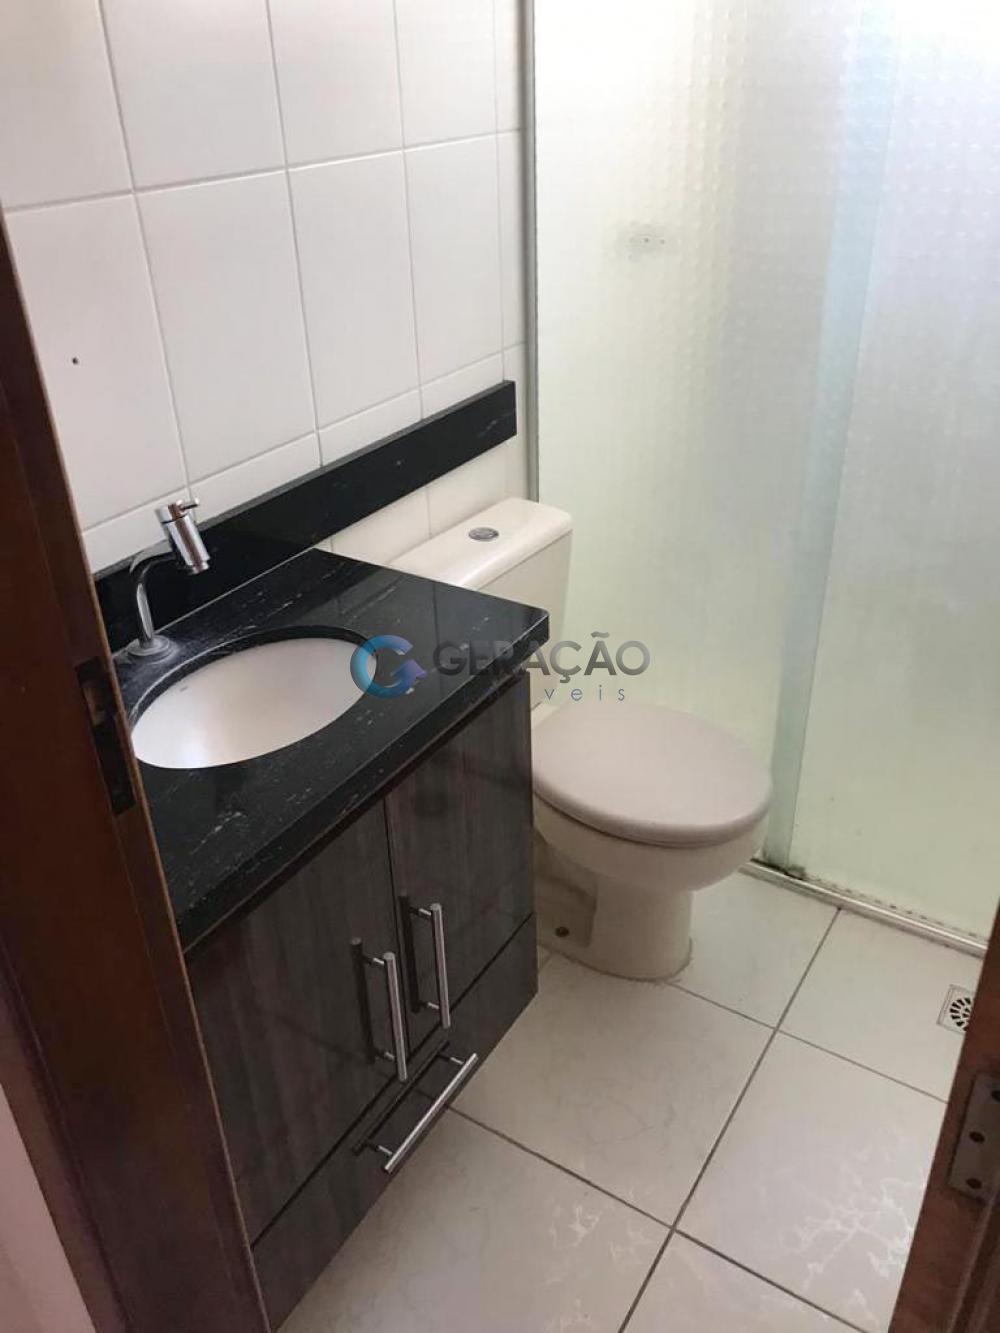 Comprar Apartamento / Padrão em Caçapava R$ 250.000,00 - Foto 8